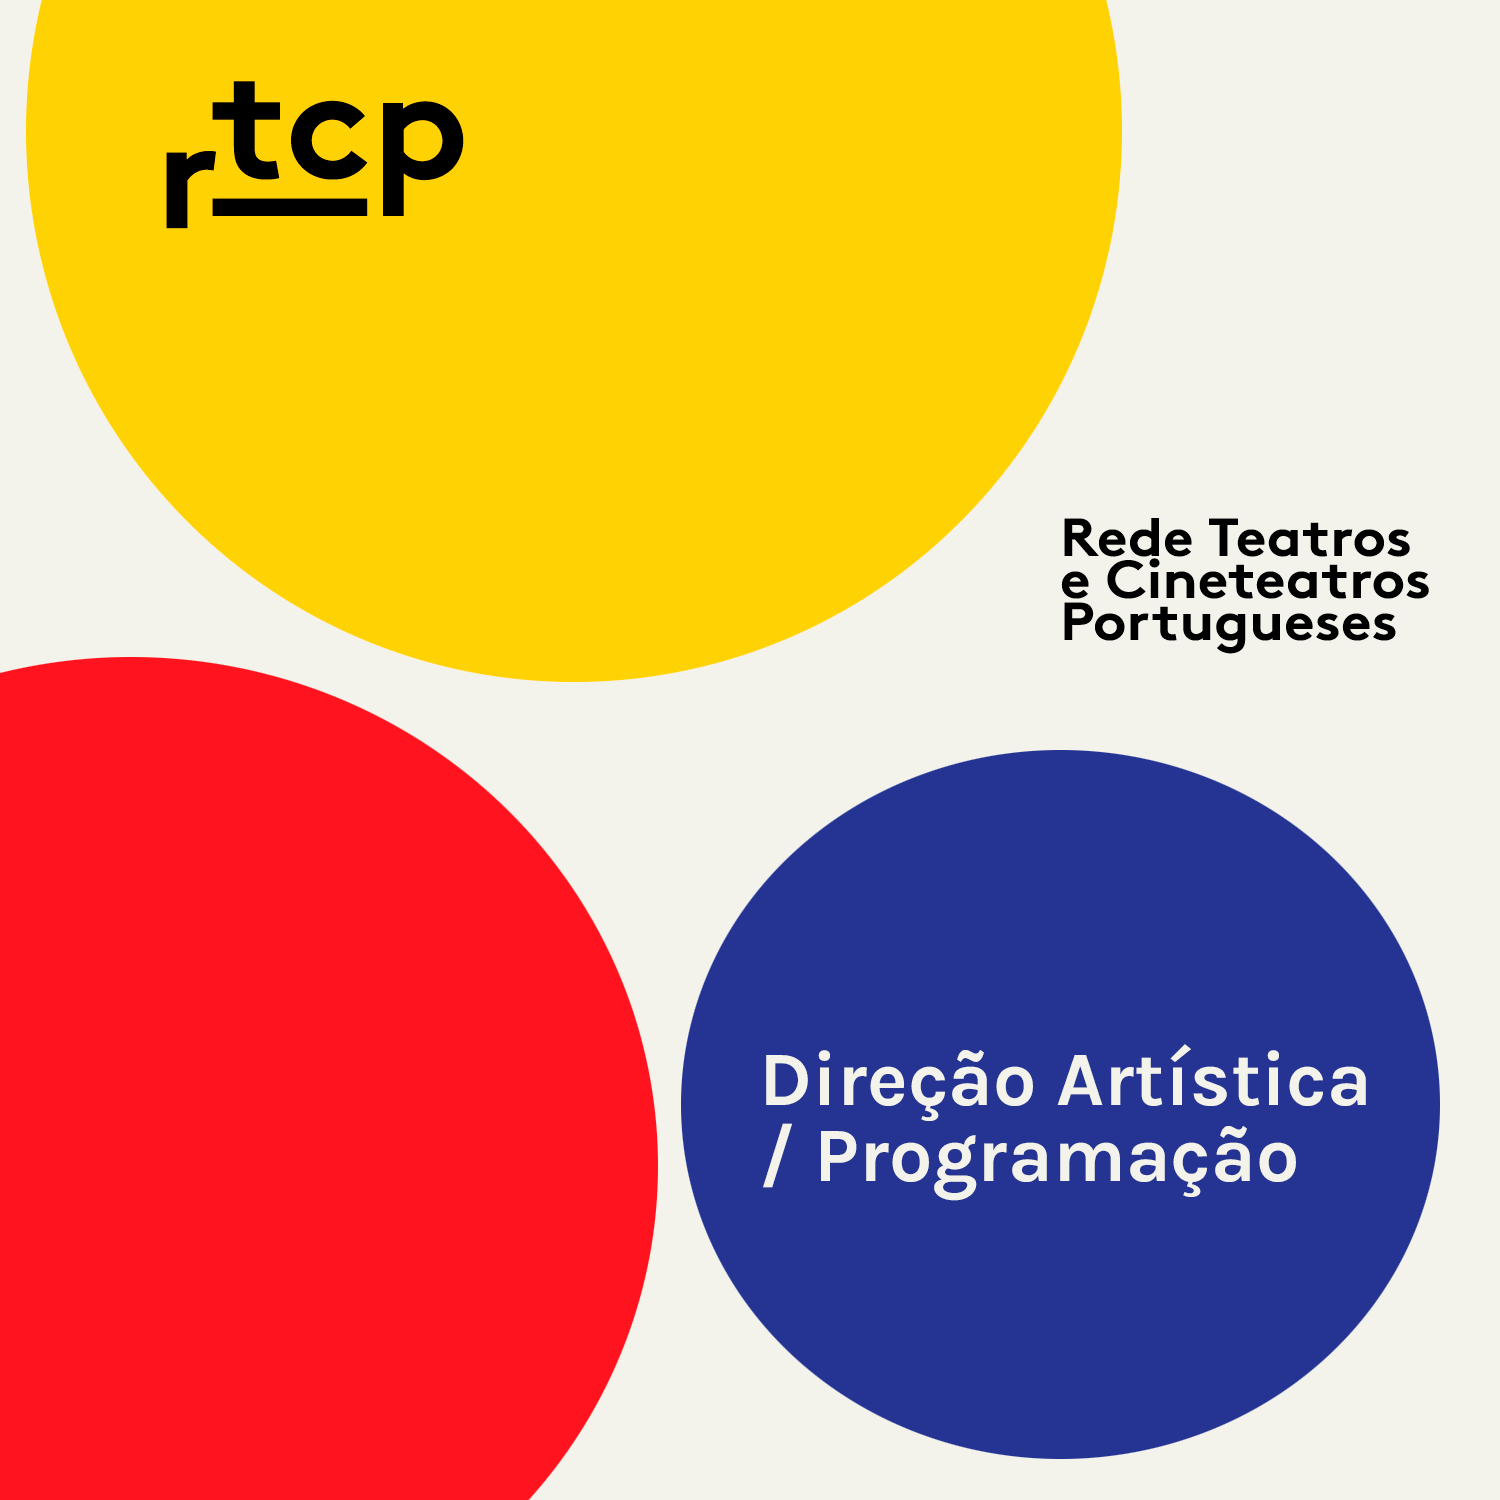 DGARTES DIVULGA LISTA DE DIRETORES ARTÍSTICOS / PROGRAMADORES DA RTCP